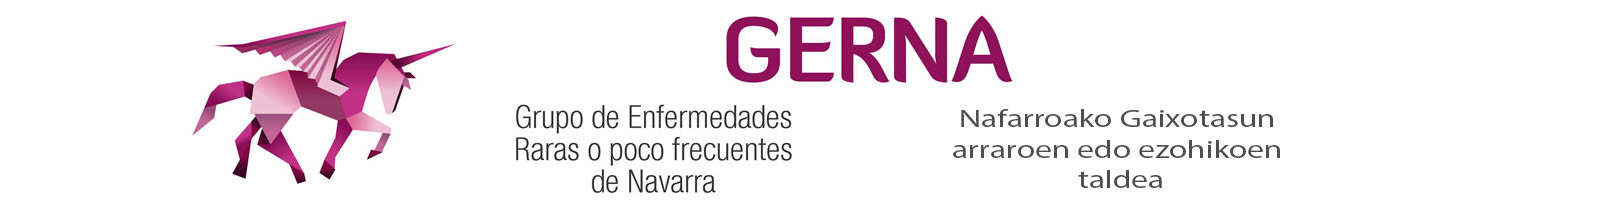 GERNA logo